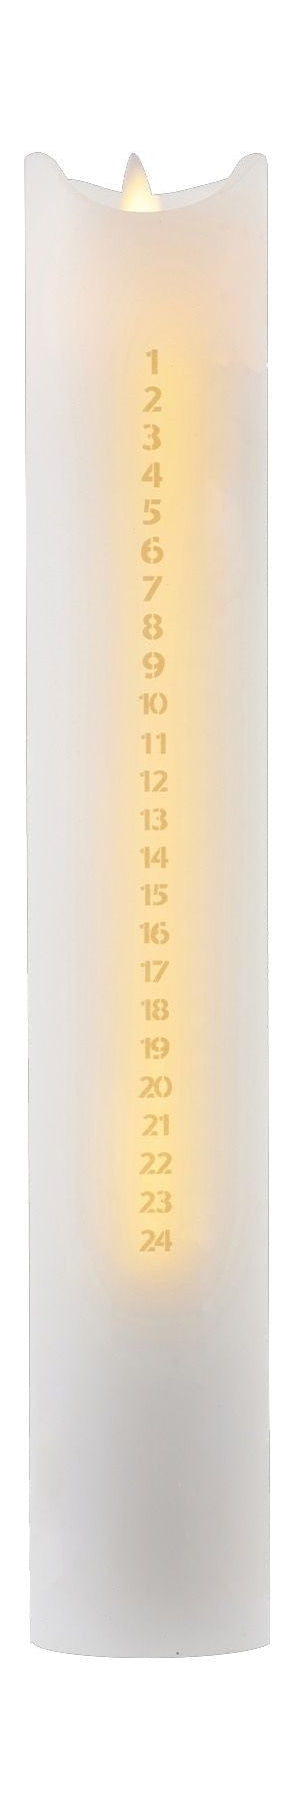 Sirius Sara Calendar Light Ø4,8x H29cm, bianco/oro